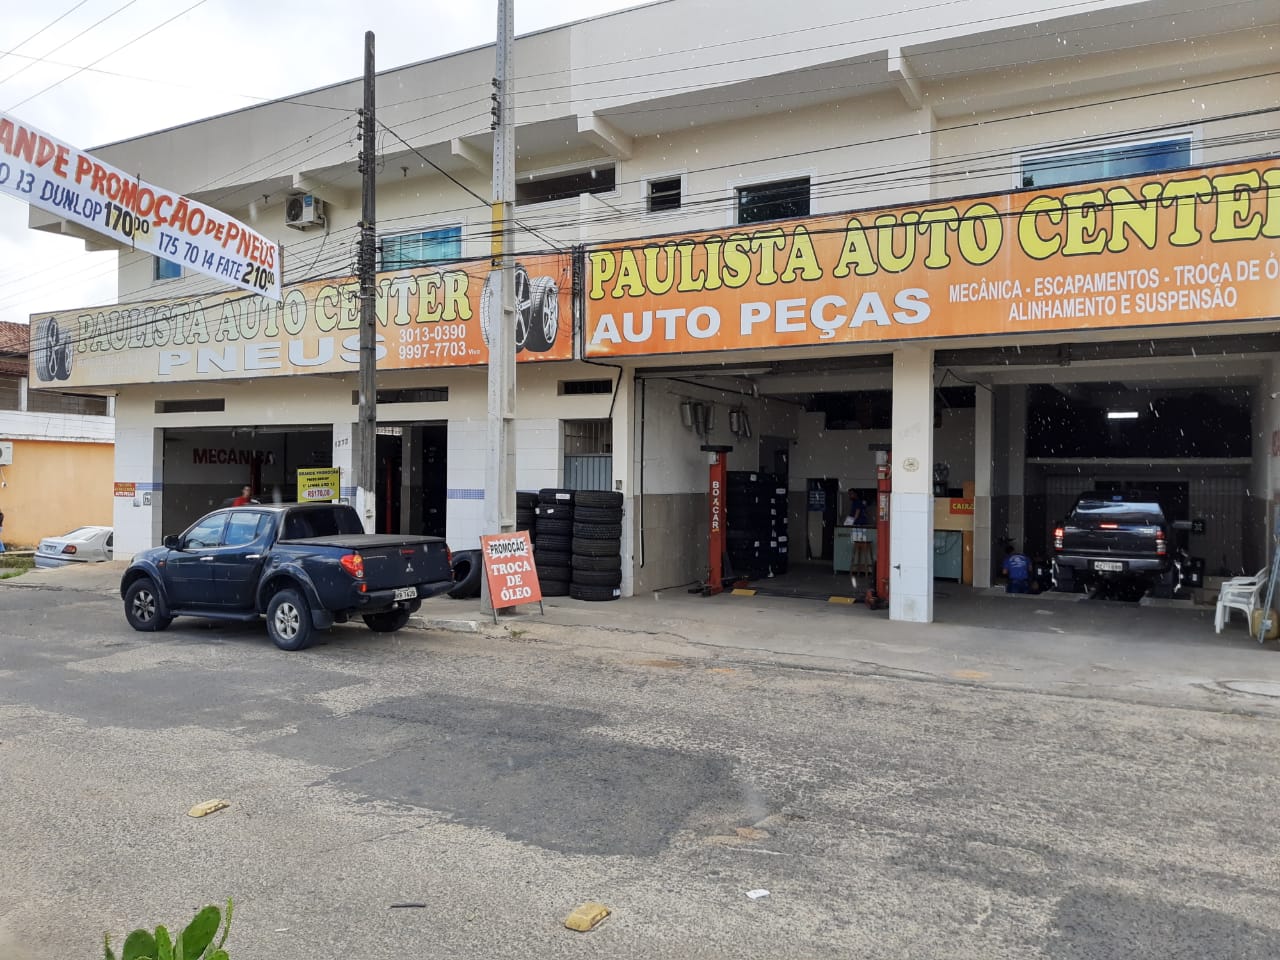 » Paulista Auto Center – Teixeira de Freitas / BA